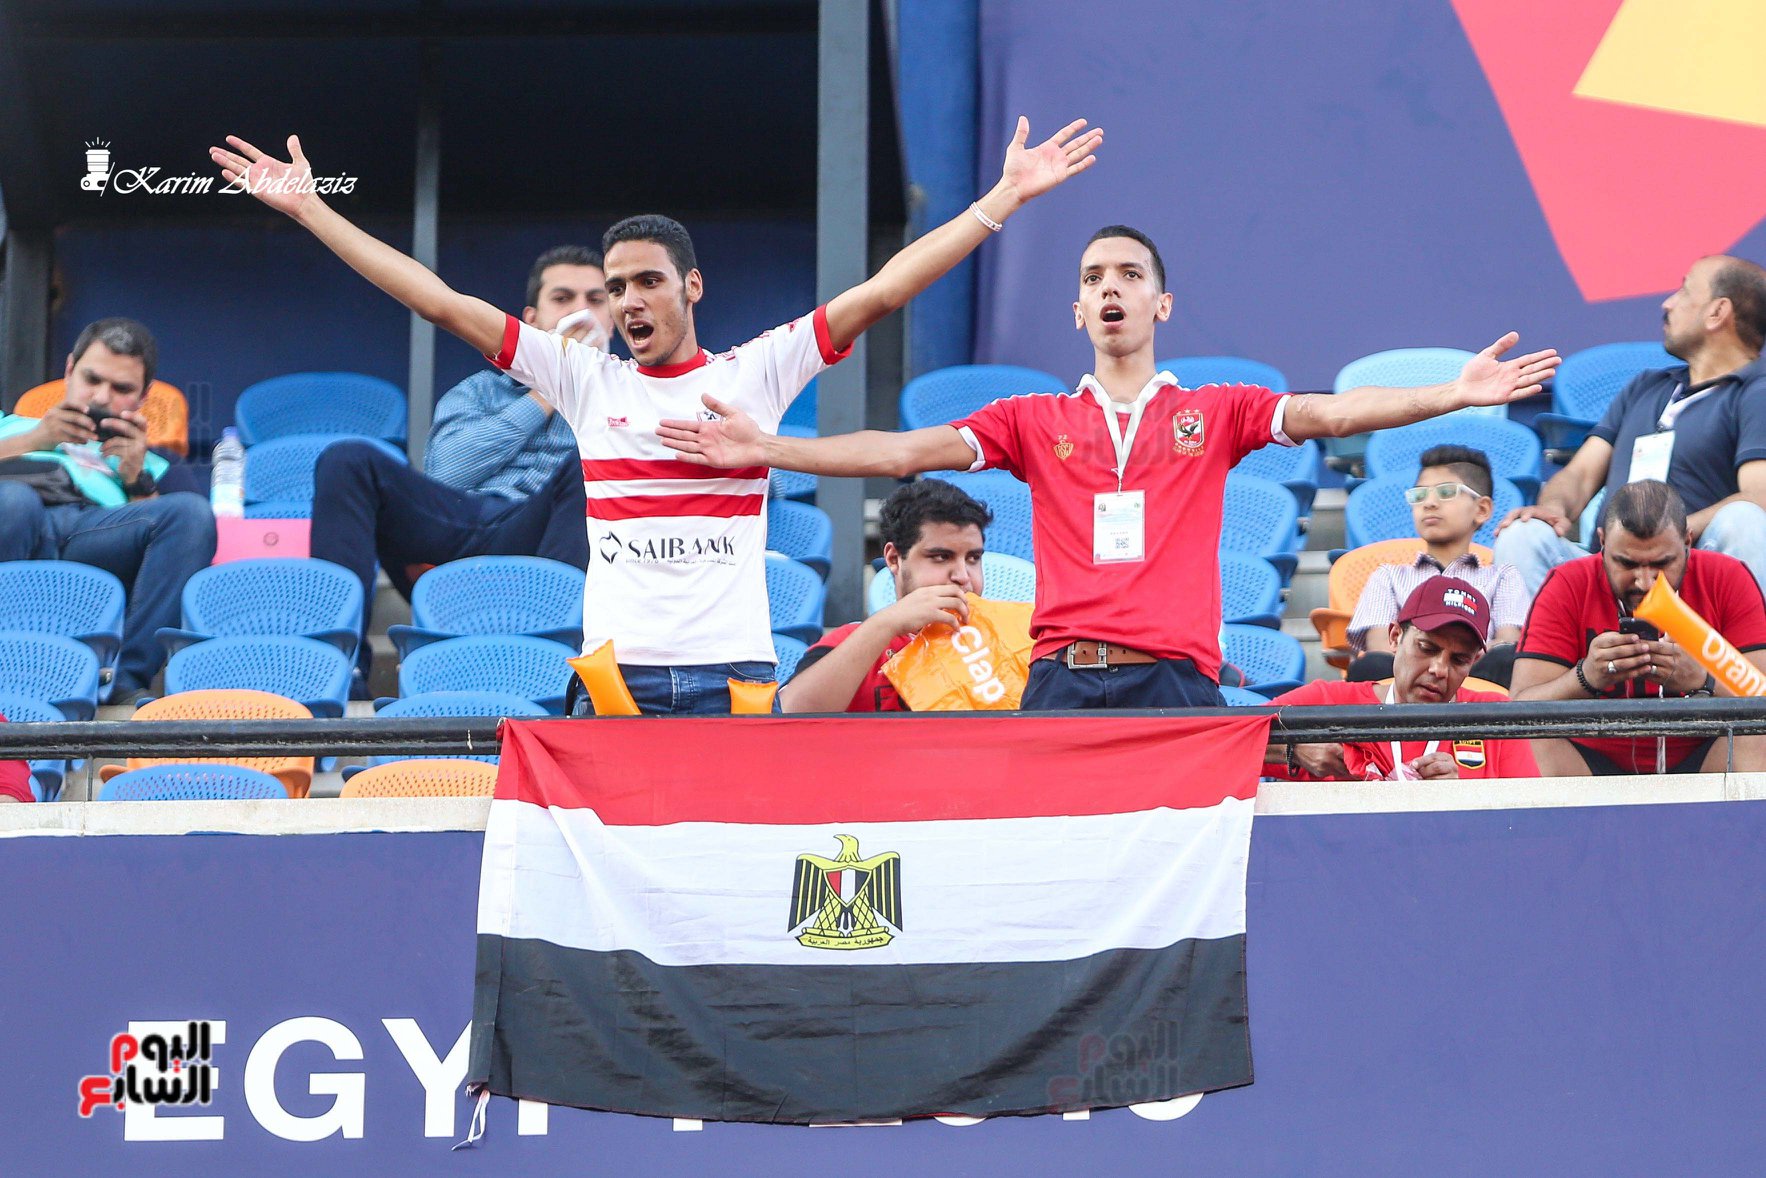 اجمل الصور الرياضية في مصر  (21)